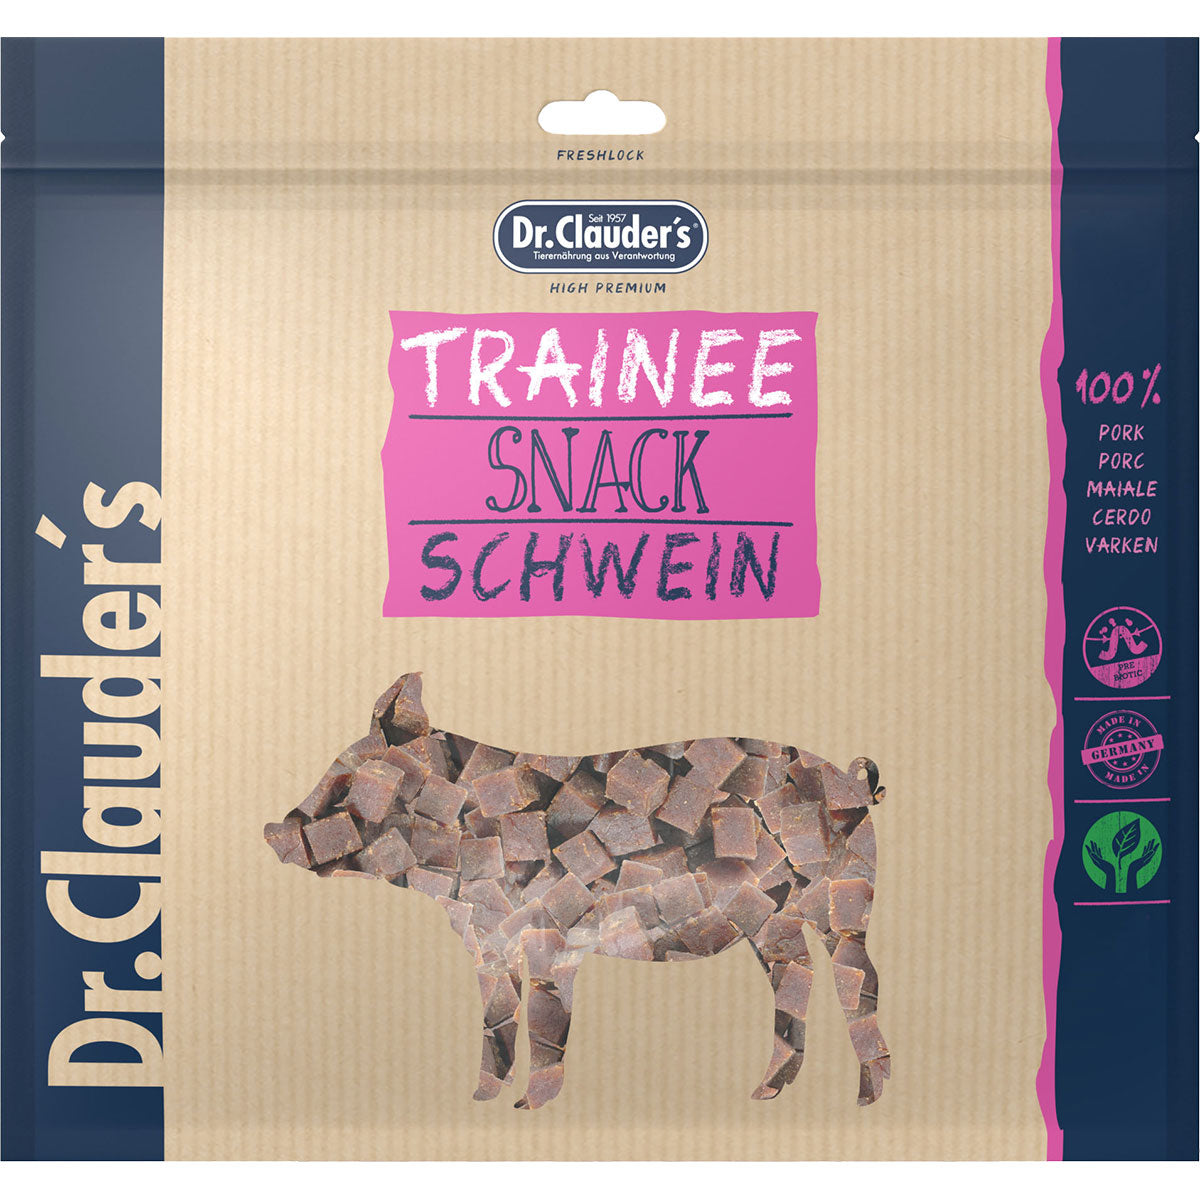 Dr. Clauders Trainee Snack Schwein, 500g